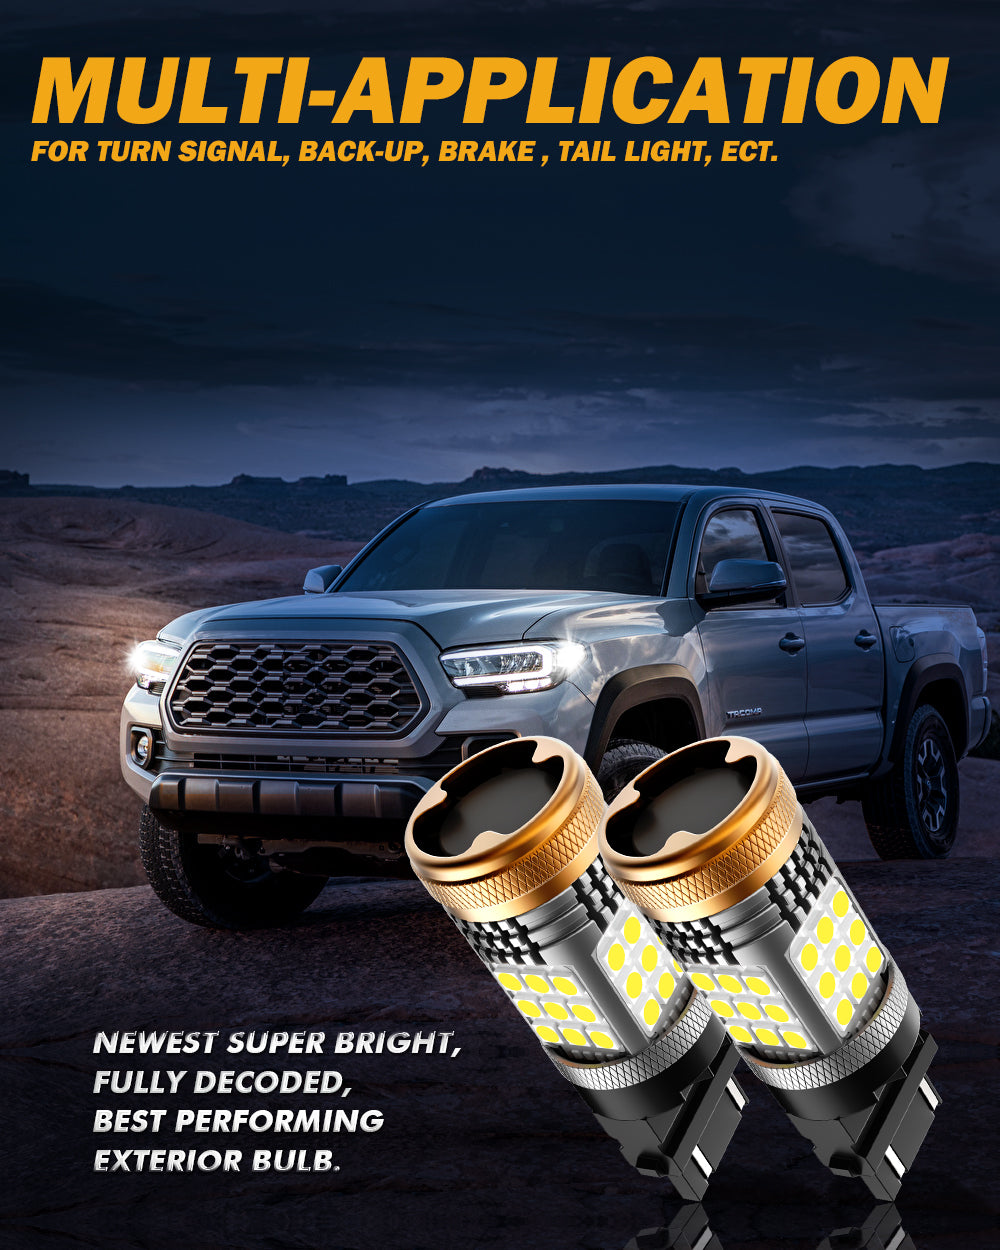 T25 3157 3156 LED Backup Reverse/Turn Signal/Brake Tail Light Bulbs 56